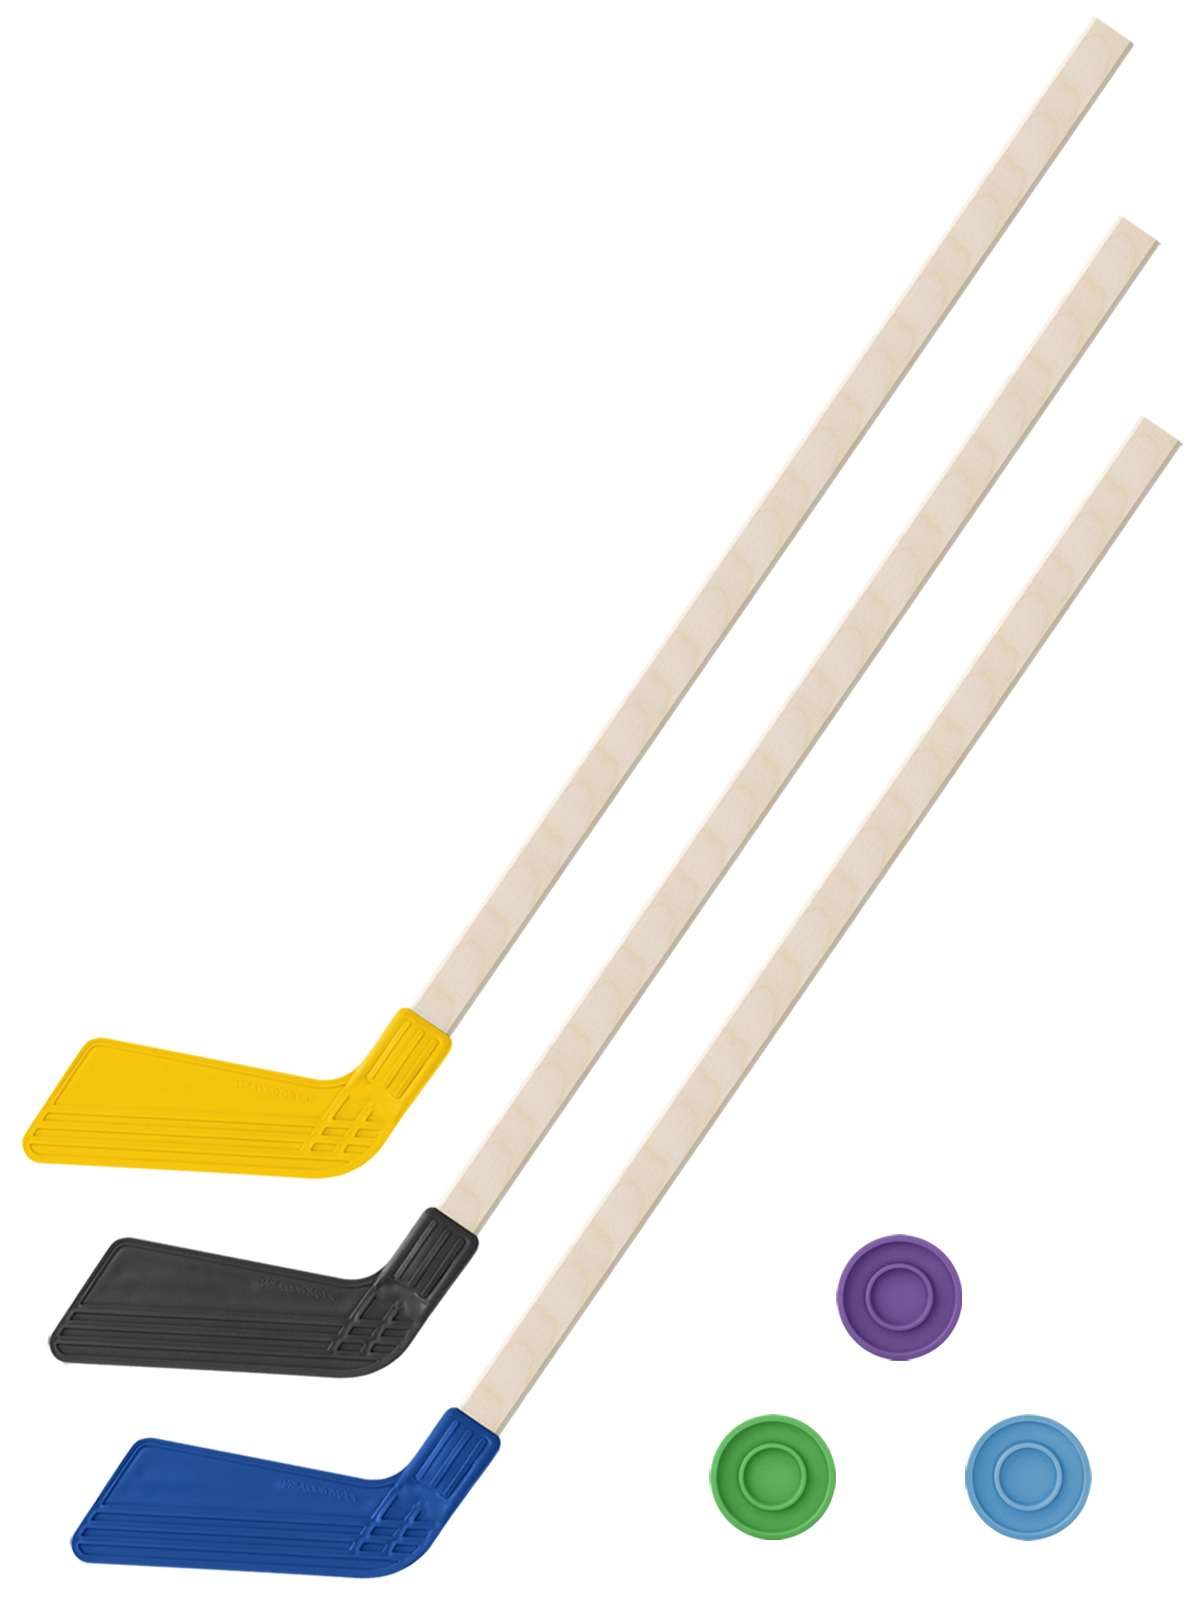 Детский хоккейный набор Задира-плюс 3 в 1 Клюшка хоккейная 80см (жёл,черн,син) + 3 шайбы